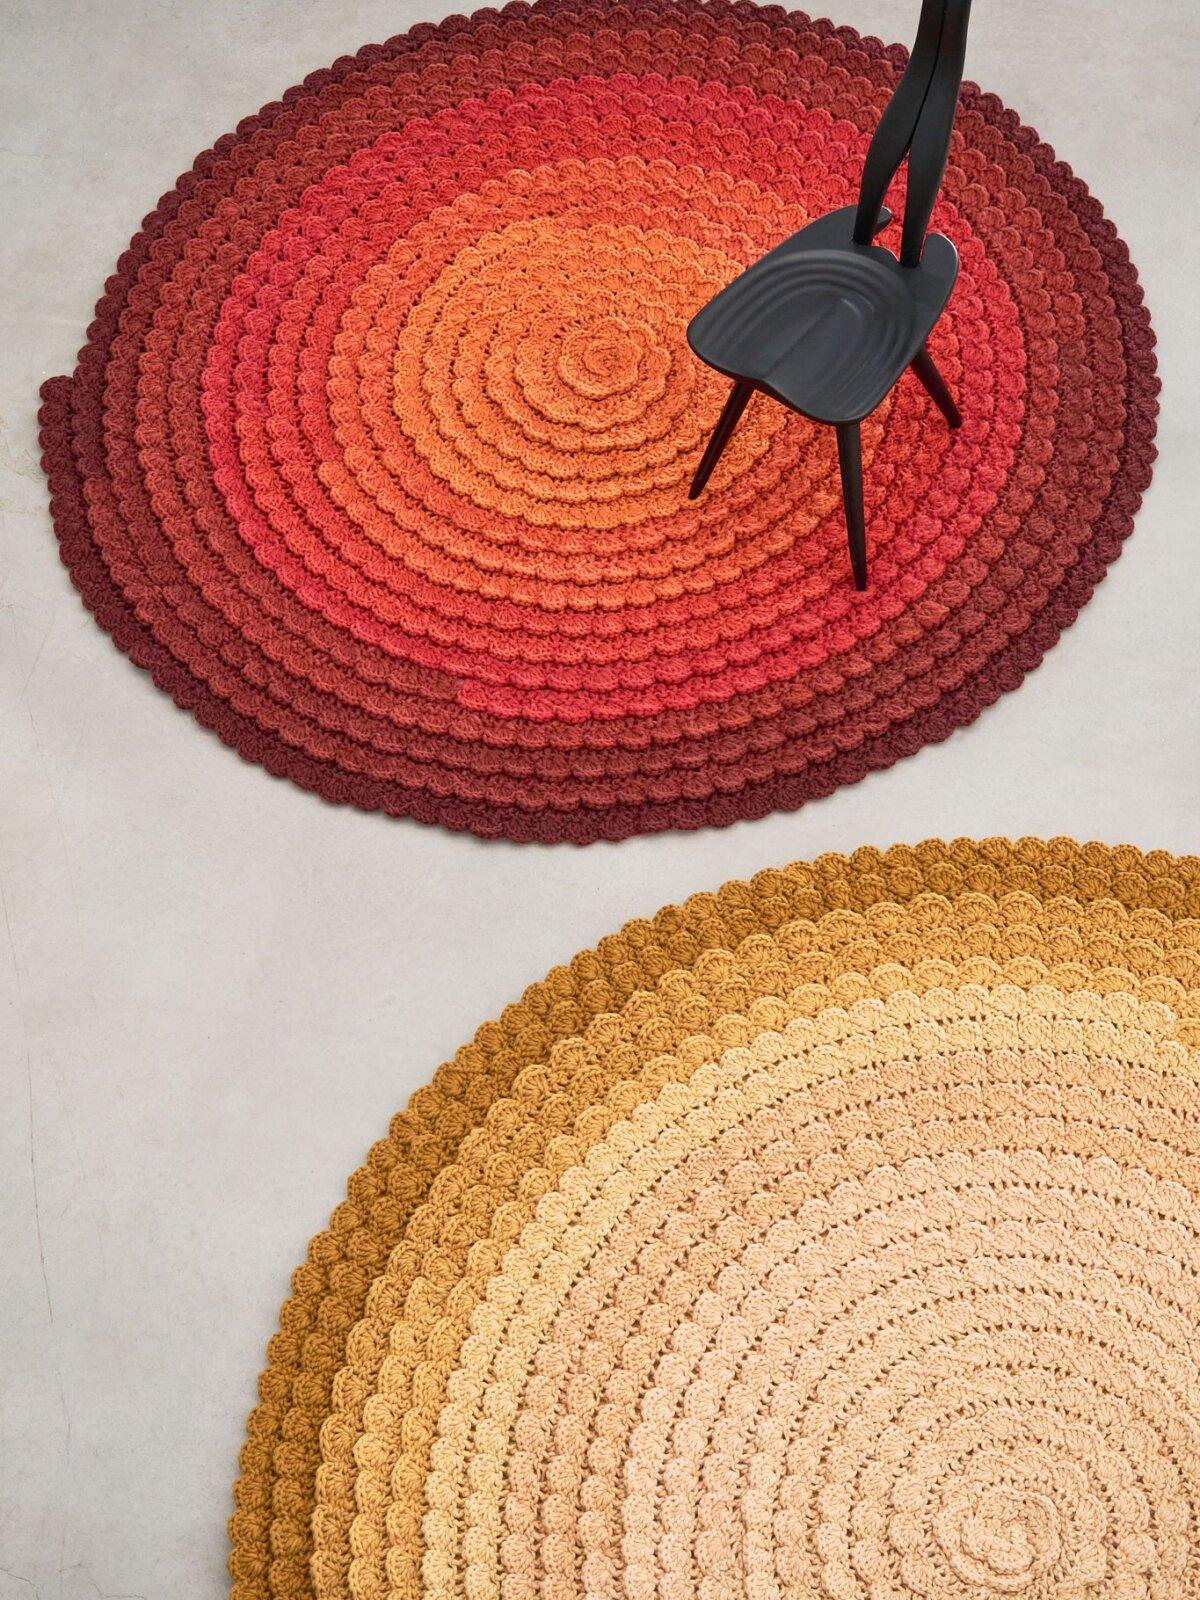 La Collection Swirl propose une variété de tapis inspirés par les quatre saisons, avec des noms évocateurs tels que Autumn, Spring, Winter et Summer. Chaque tapis est une interprétation unique des nuances et des sentiments de chaque saison, créant